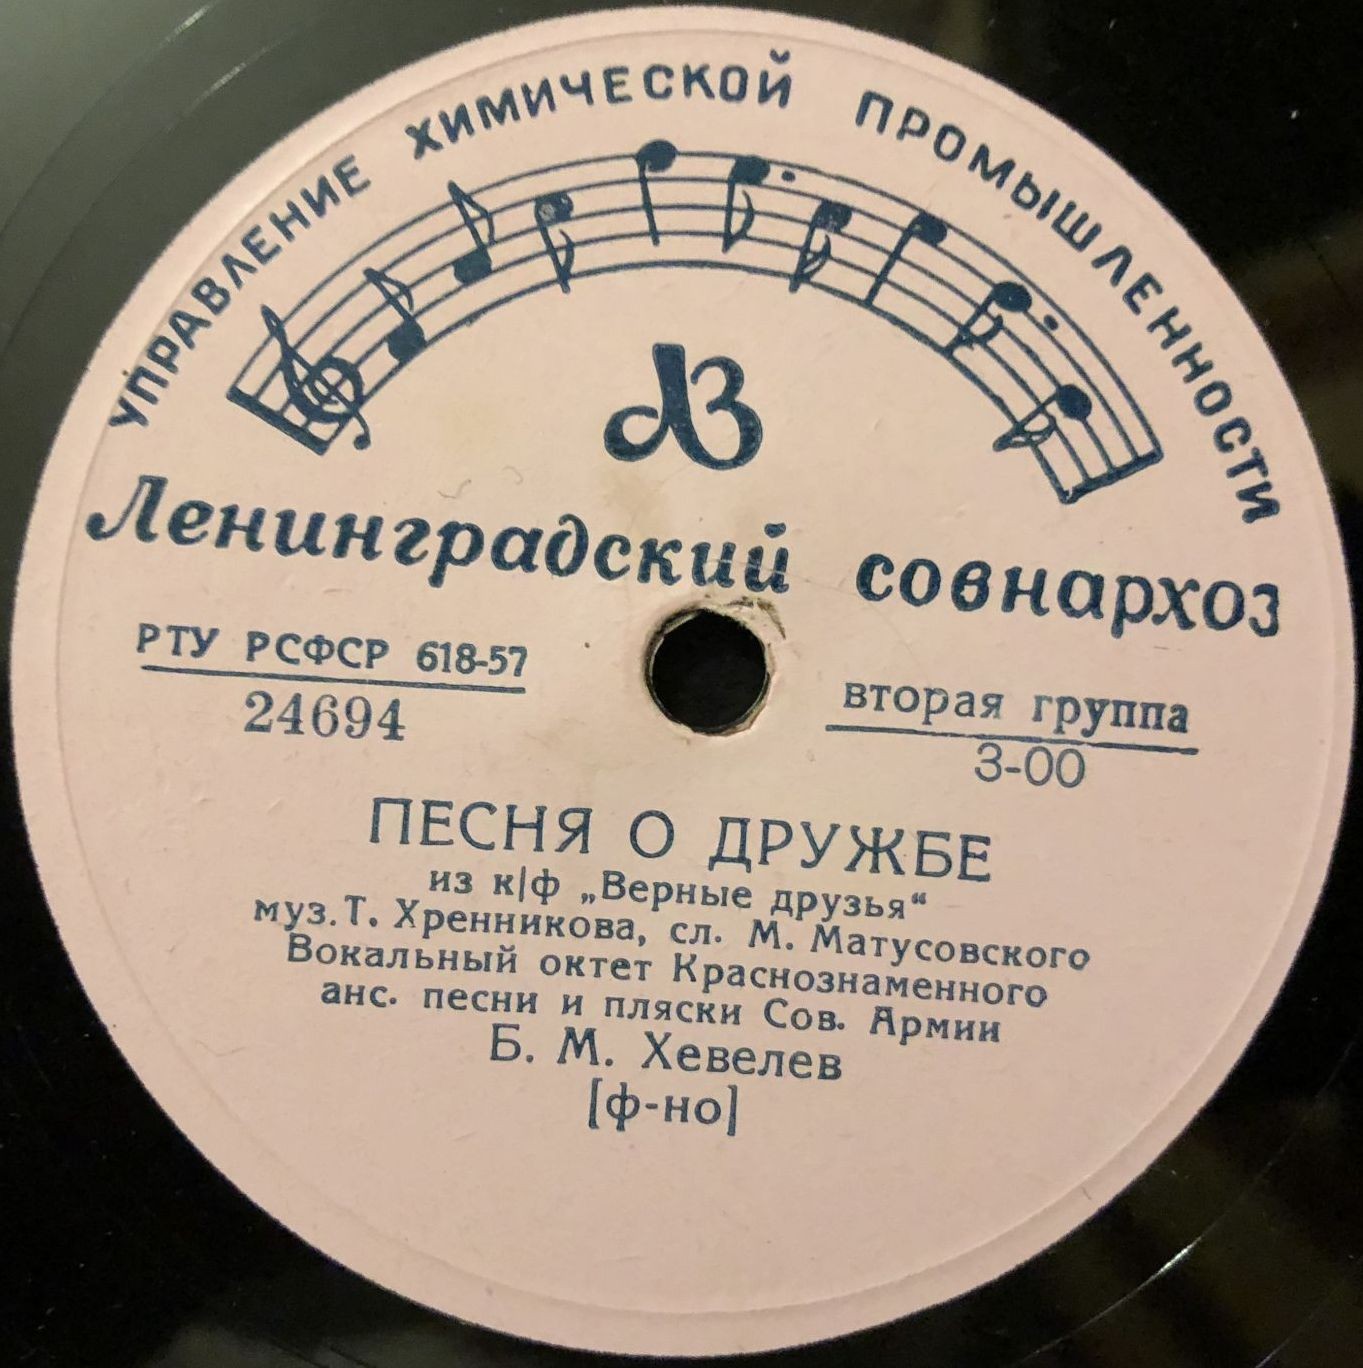 Вокальный октет Краснознамённого ансамбля песни и пляски Советской армии